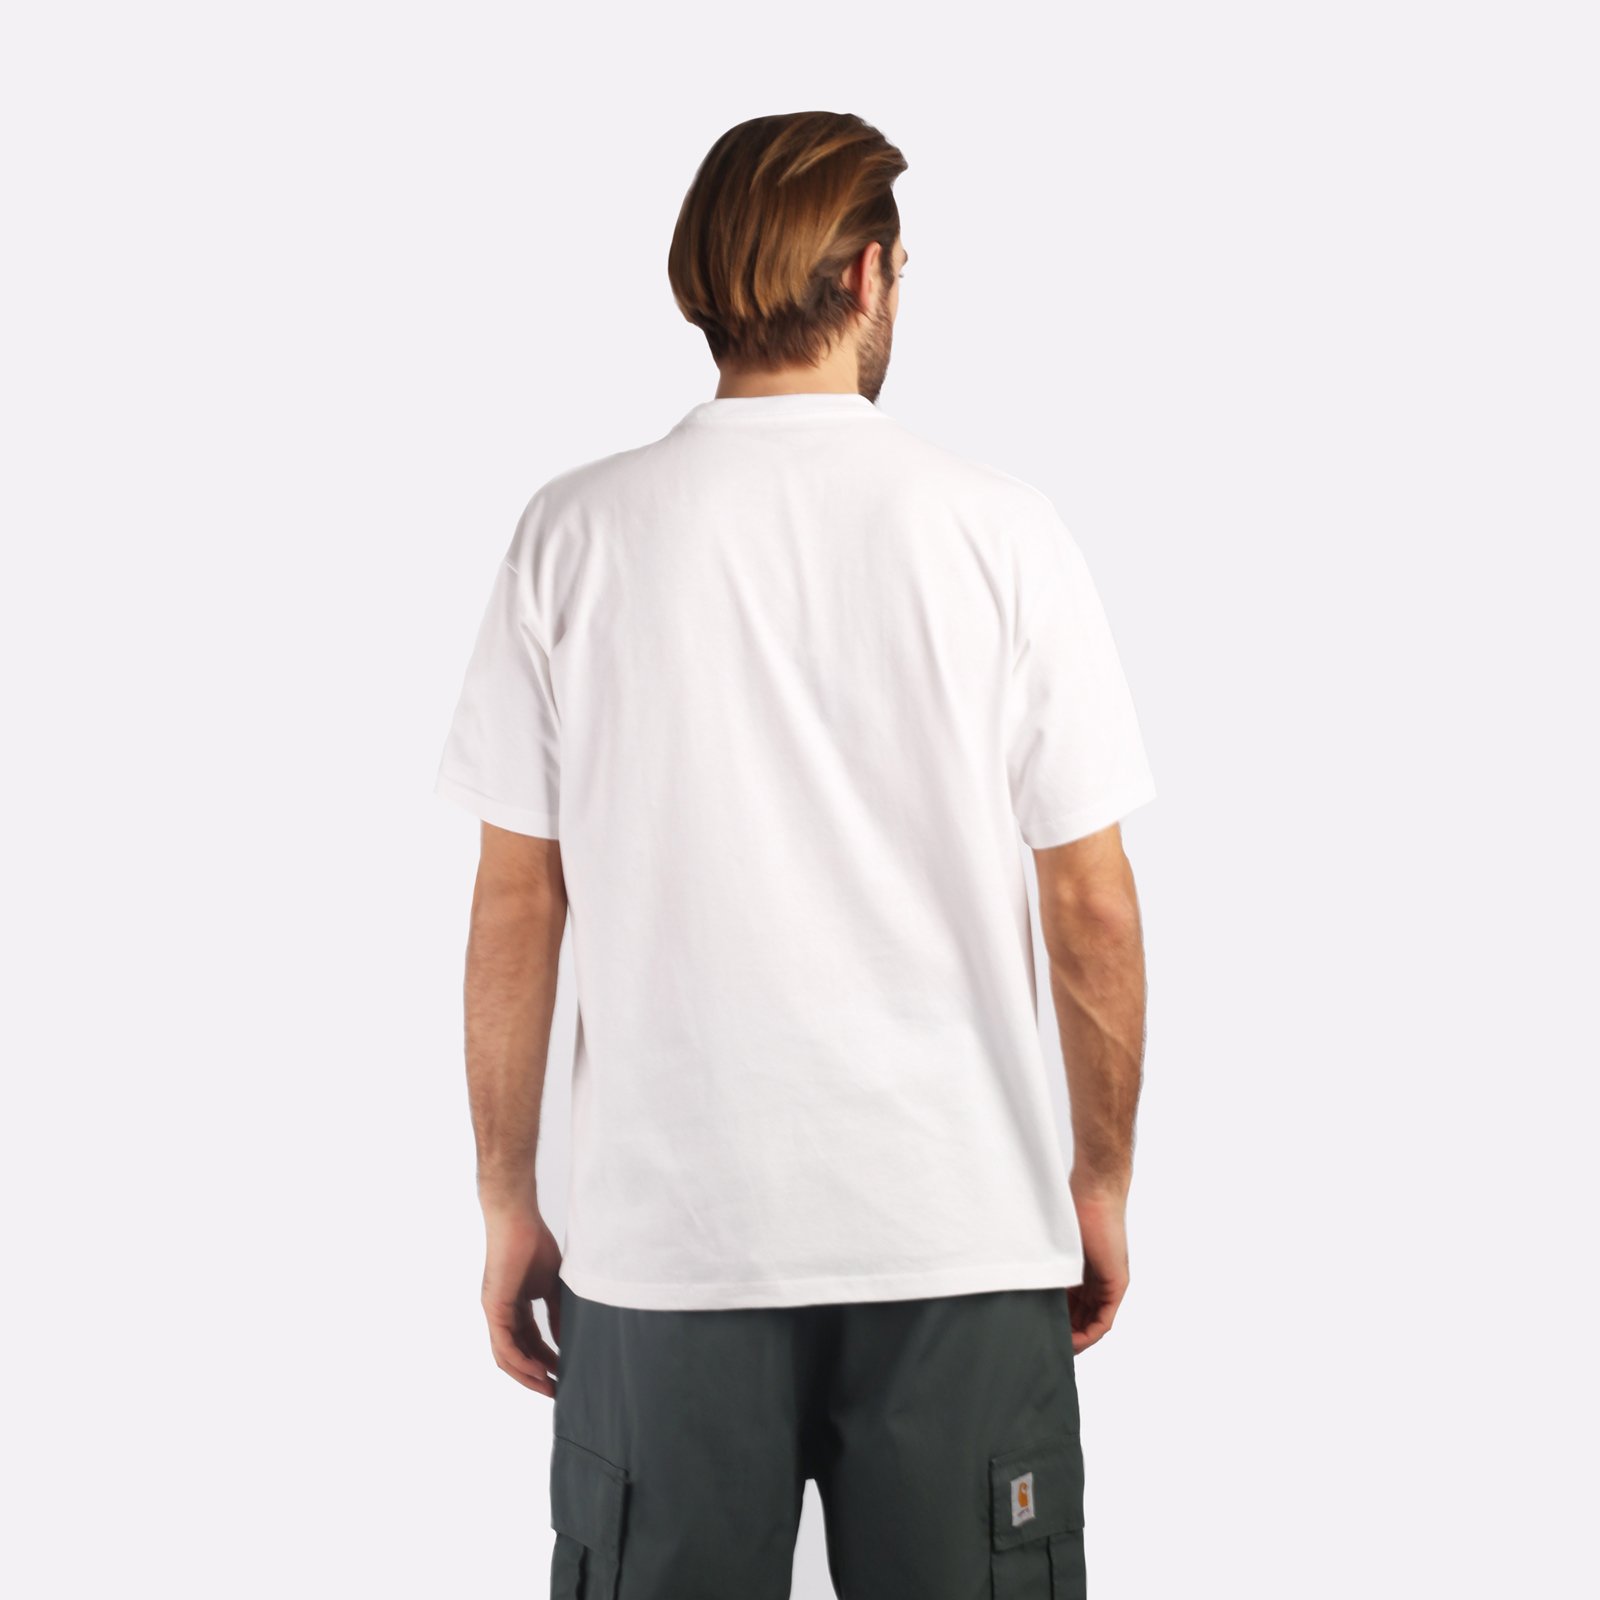 мужская белая футболка Carhartt WIP S/S Onyx T-Shirt I032875-white/black - цена, описание, фото 2